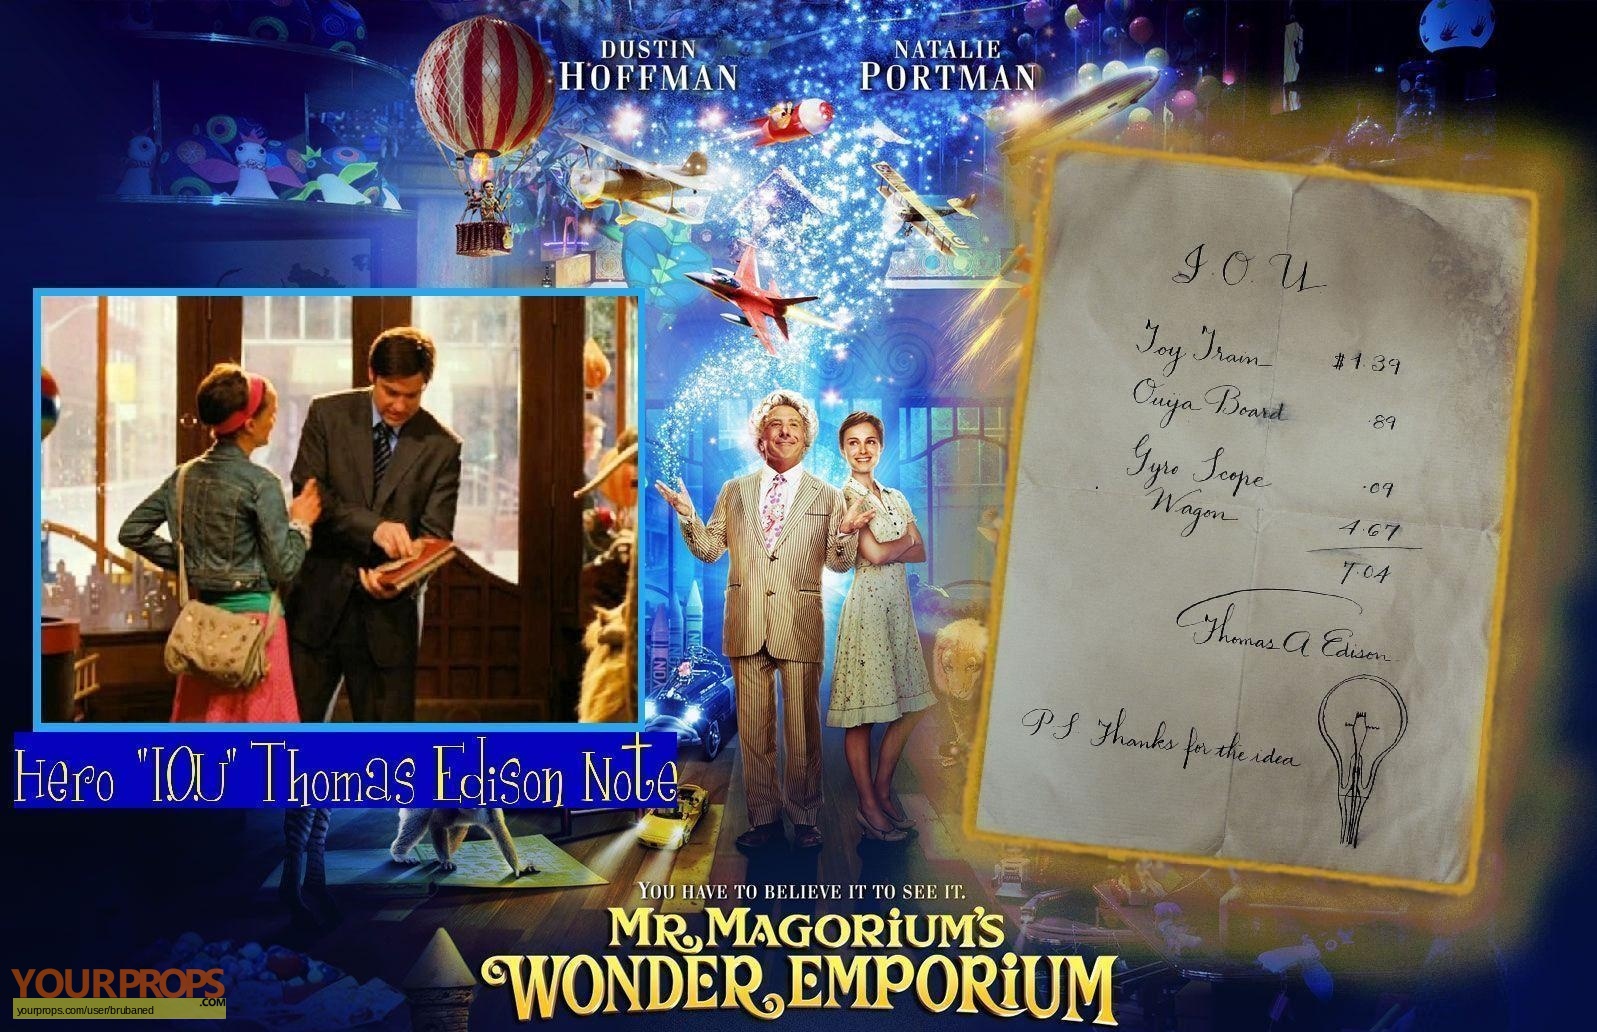 Mr. Magorium's Wonder Emporium I.O.U. Thomas Edison Note ...